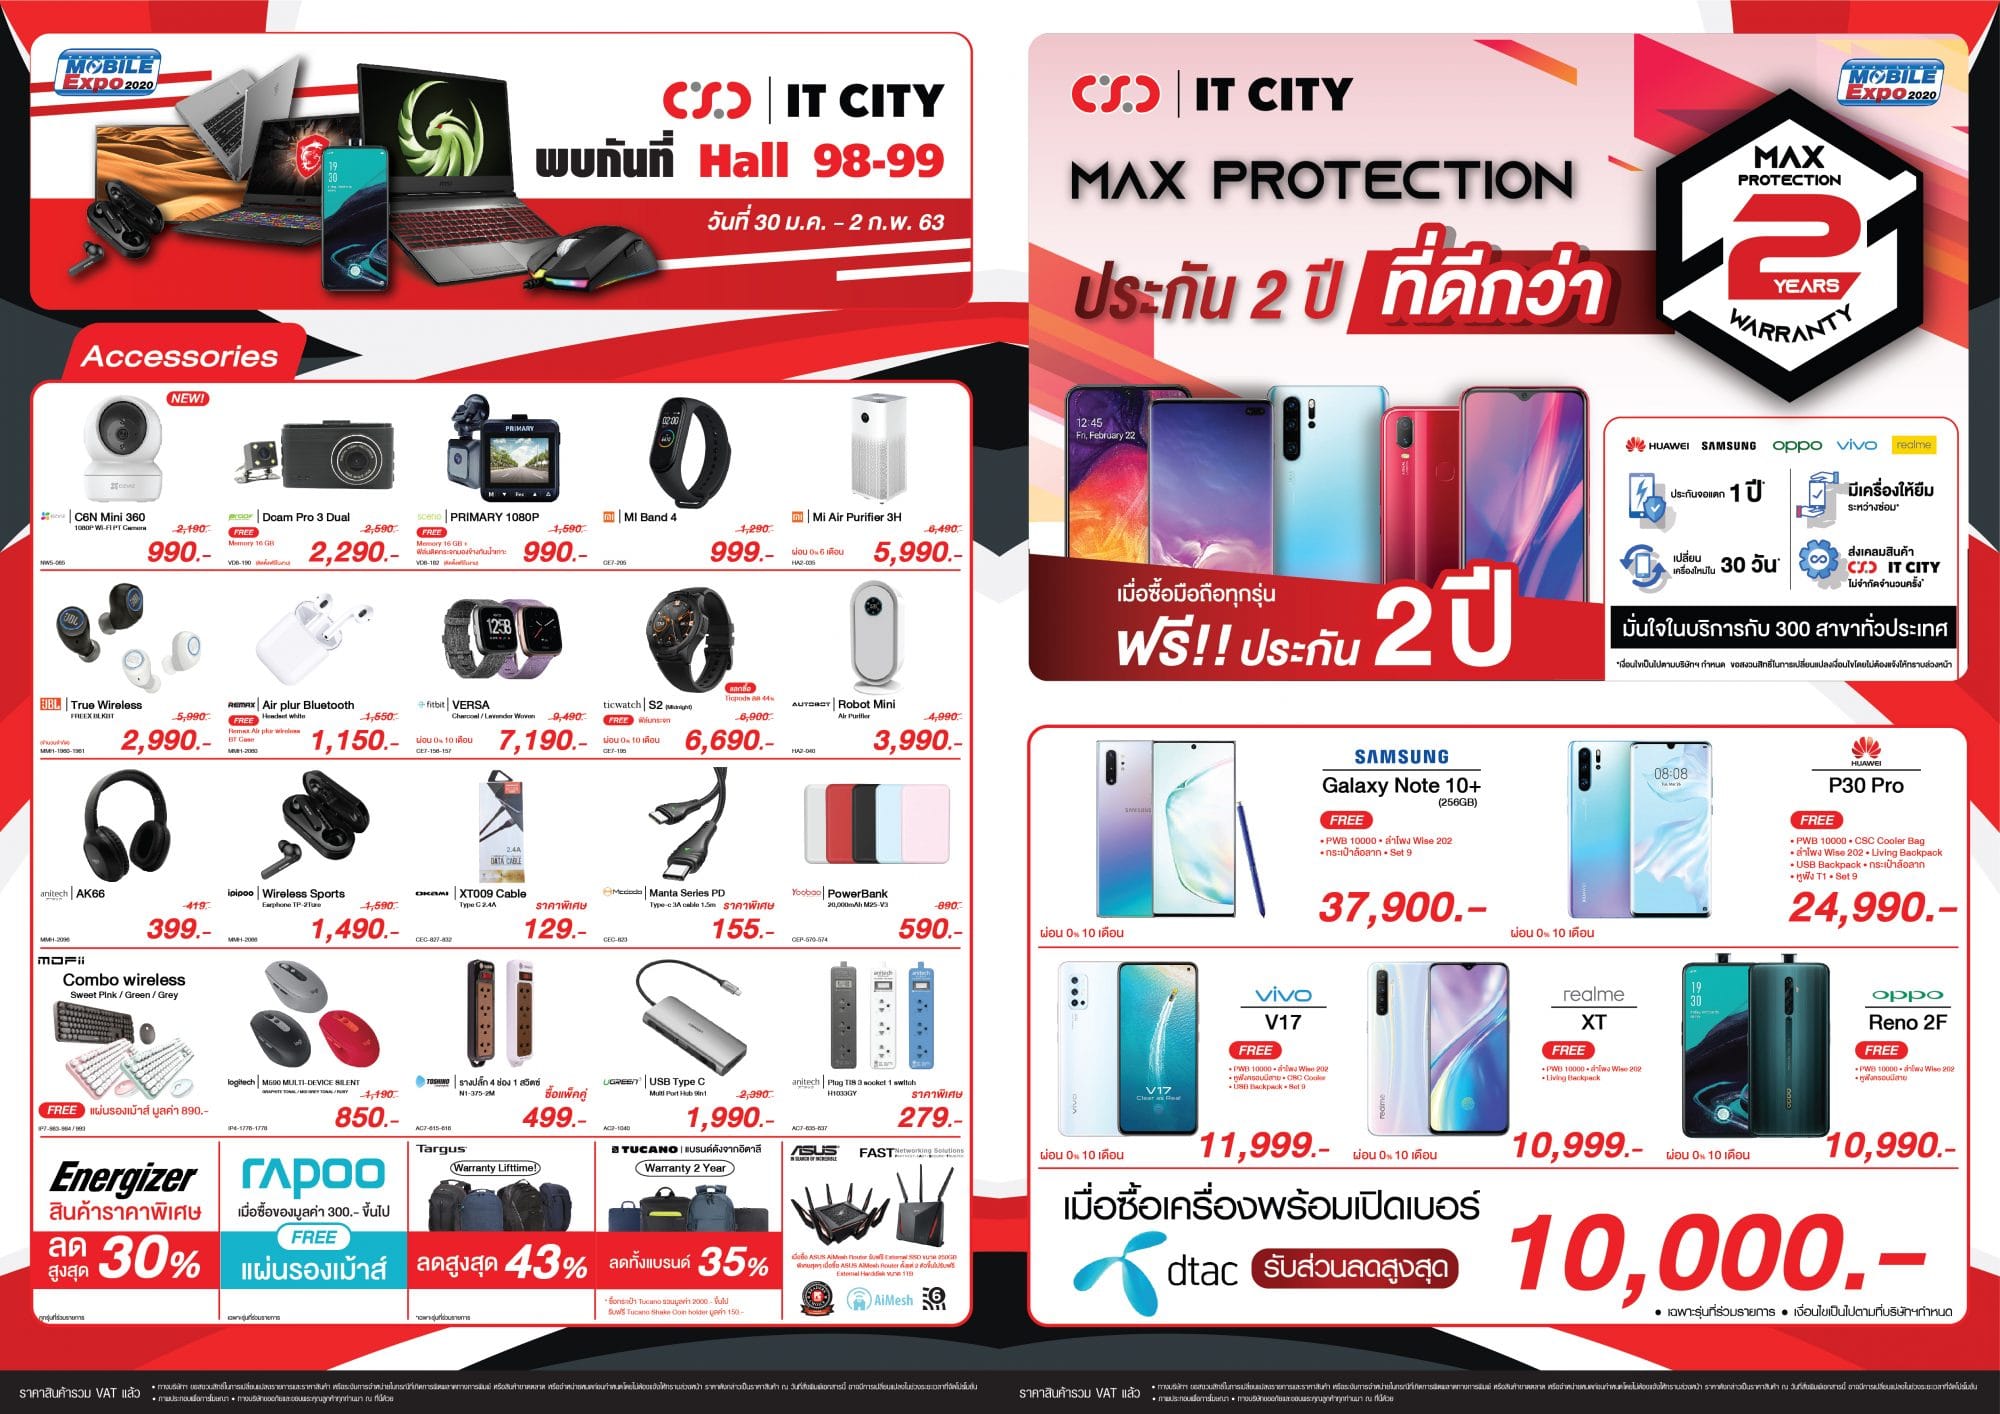 รวมโปรโมชัน CSC และ IT City ในงาน Thailand Mobile Expo 2020 29